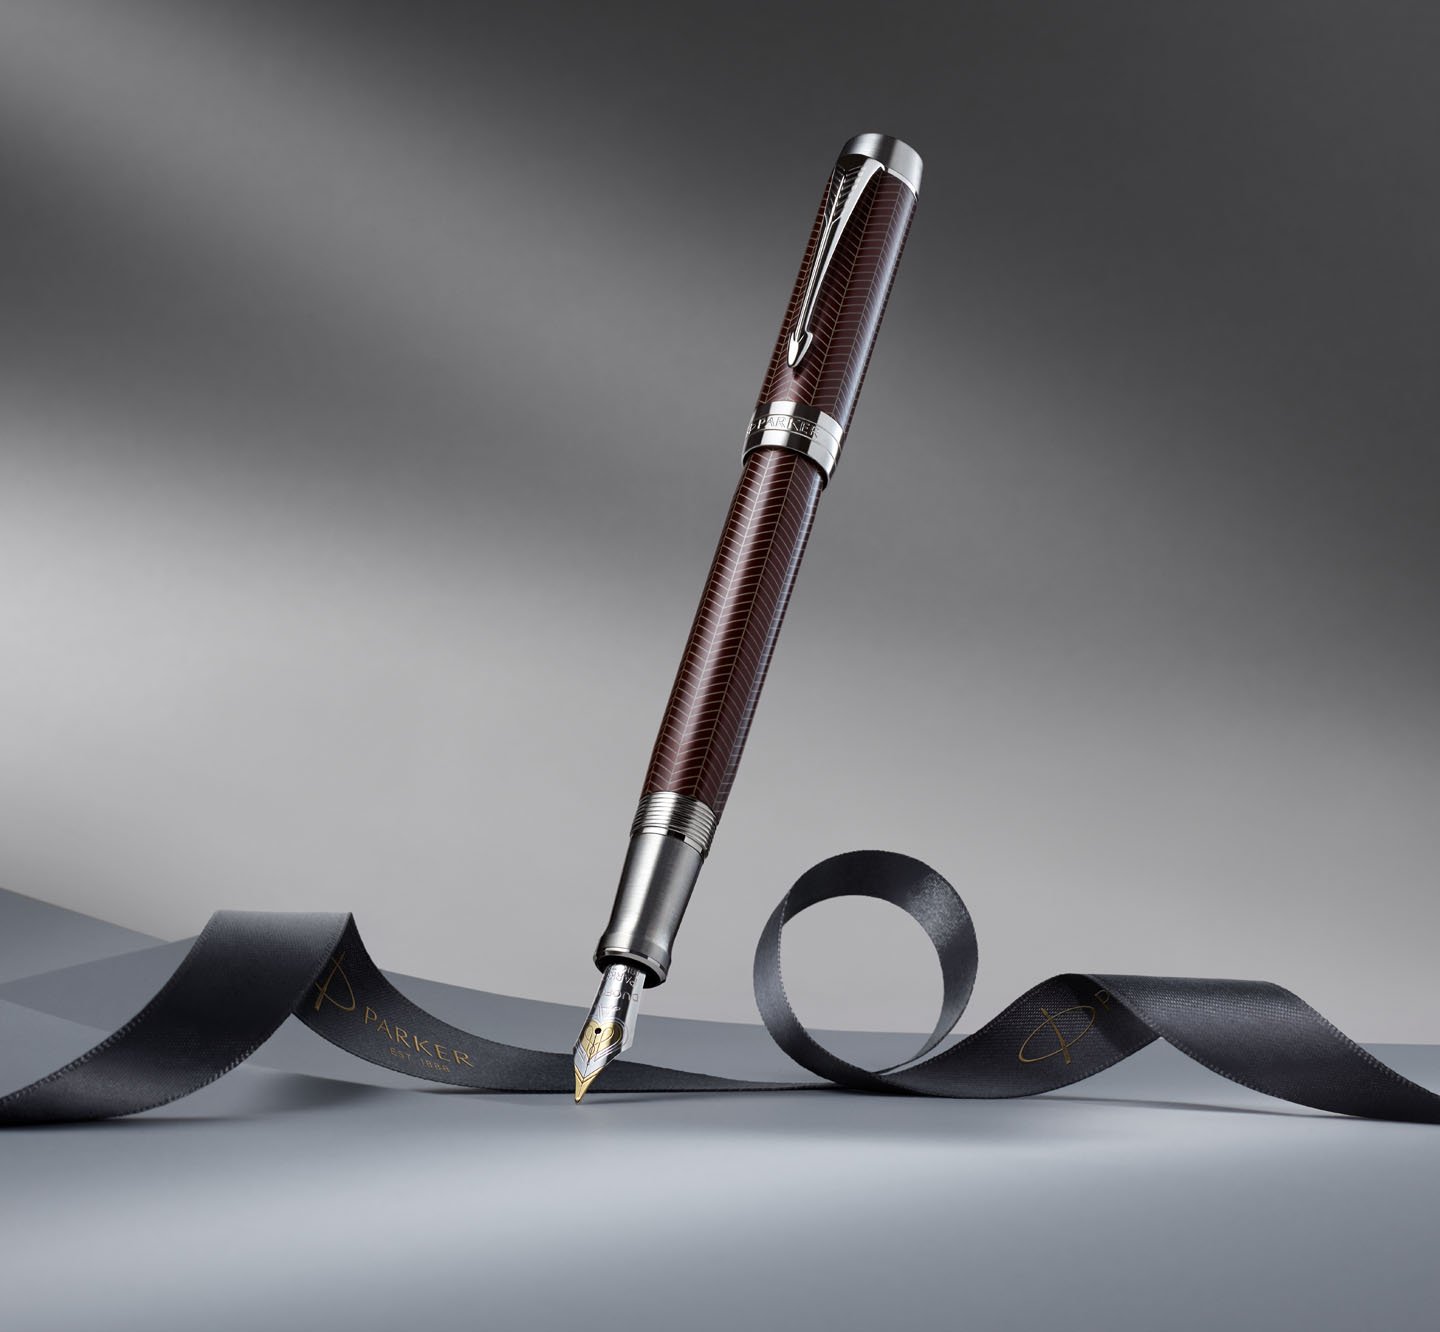 A fountain tip pen